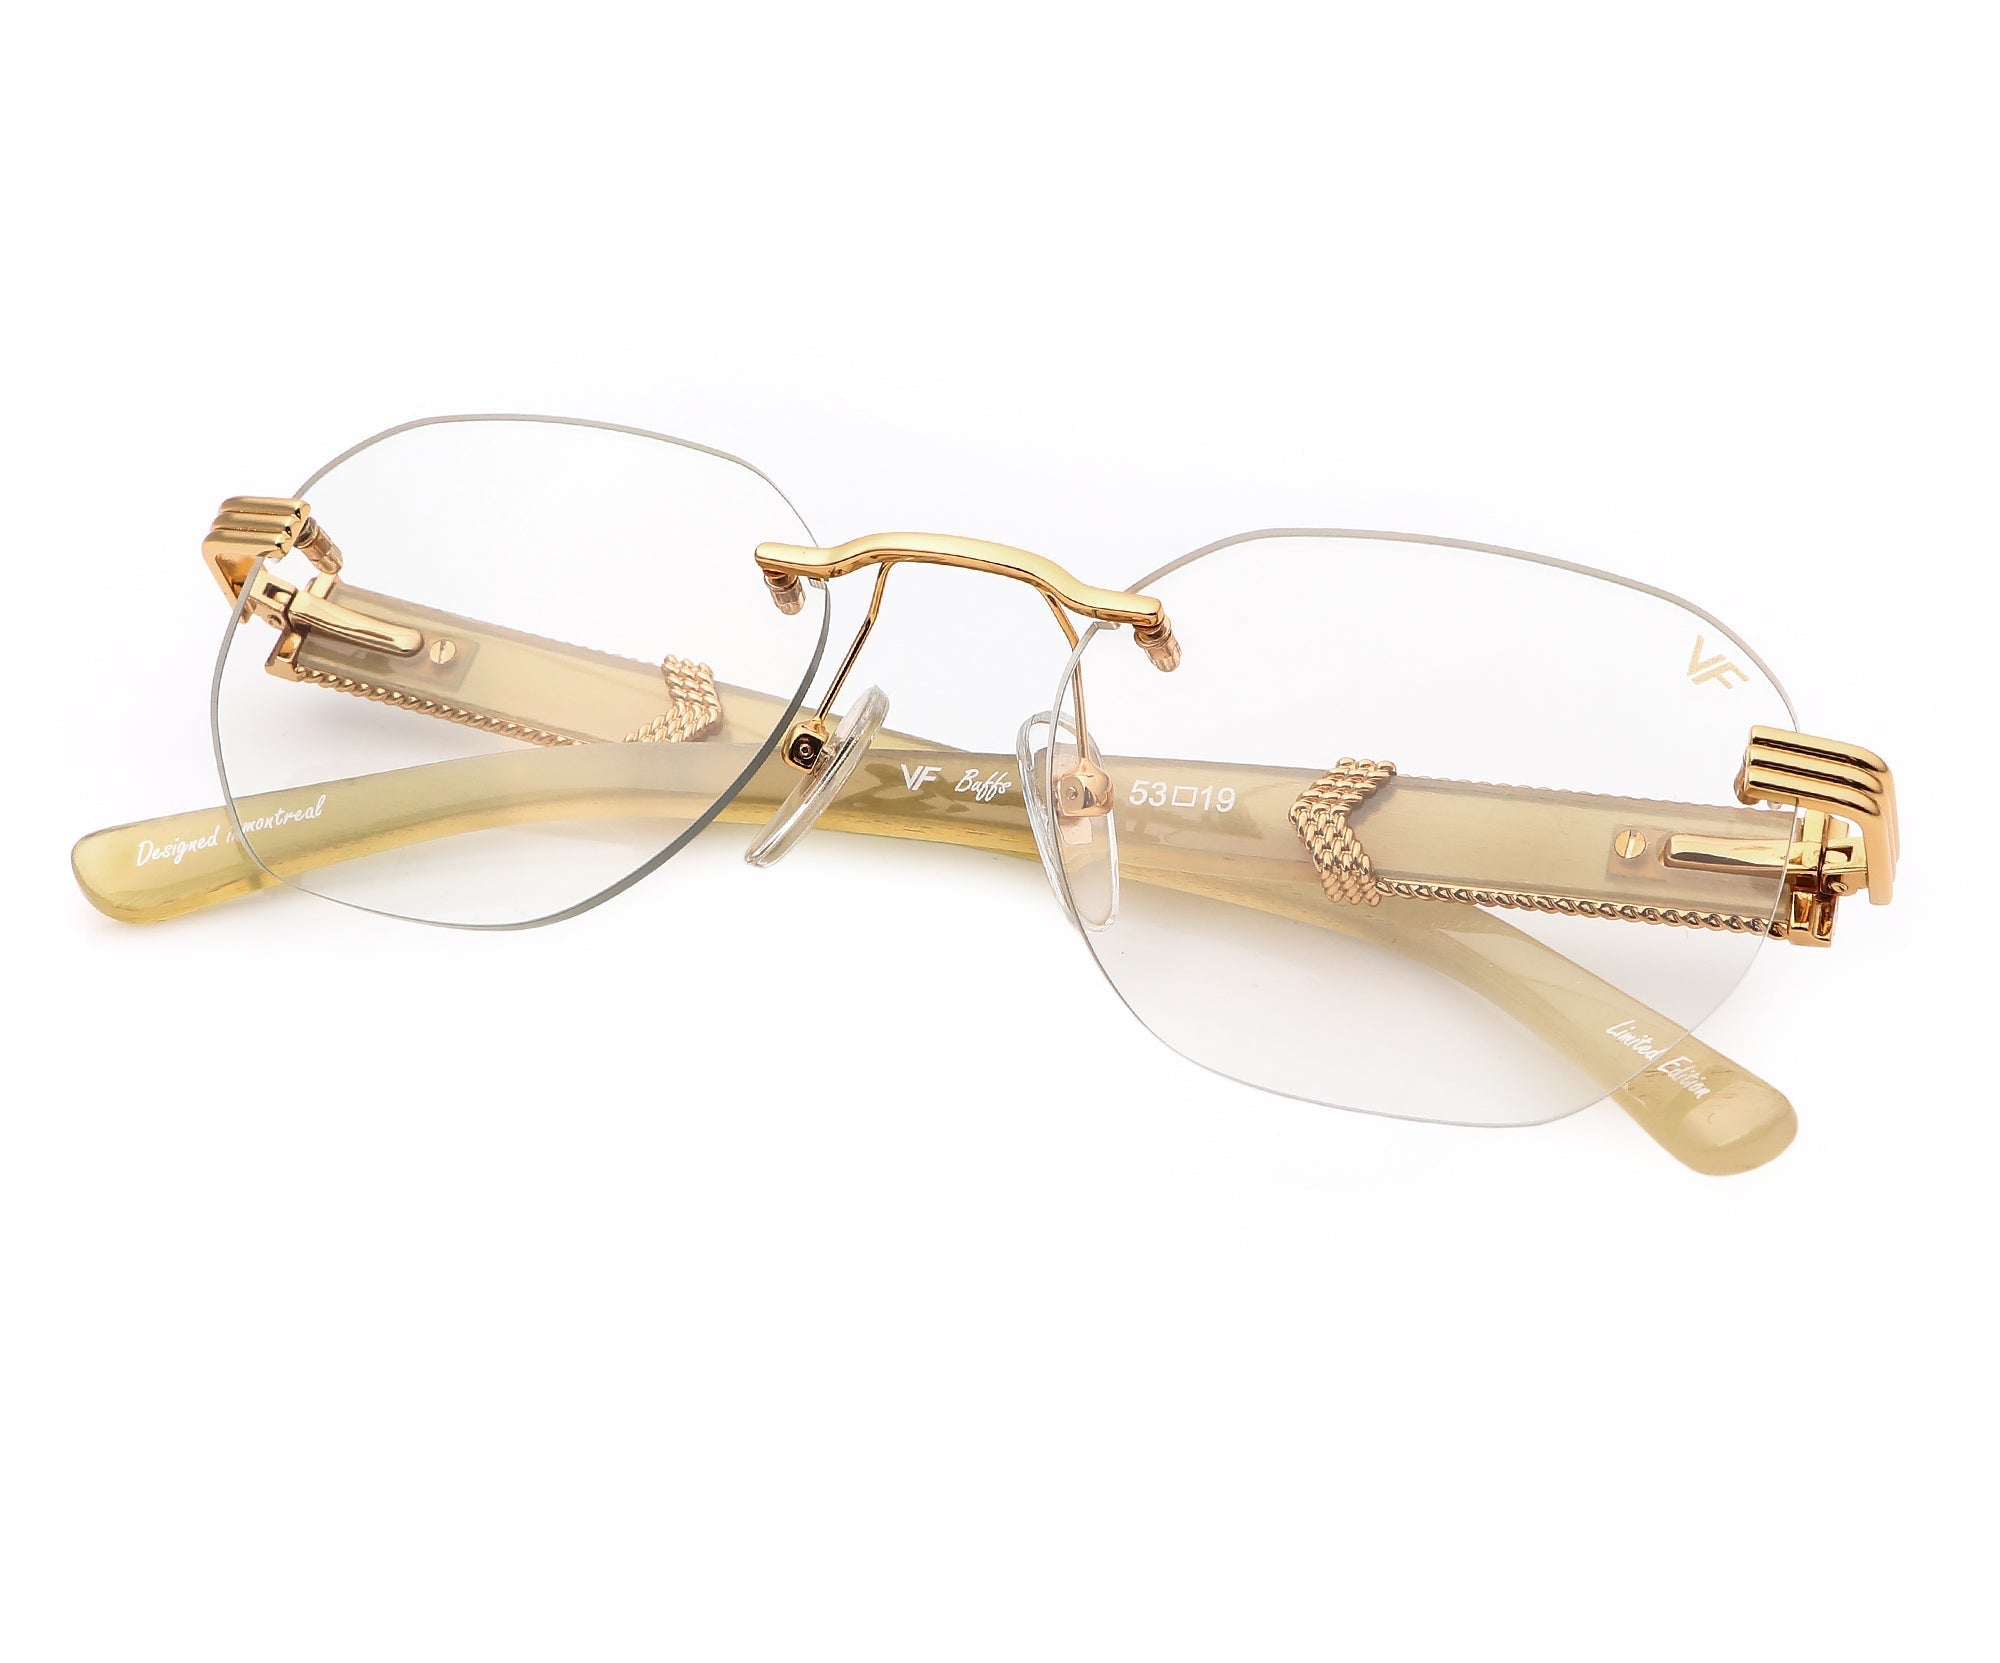 Vintage Glasses Case 